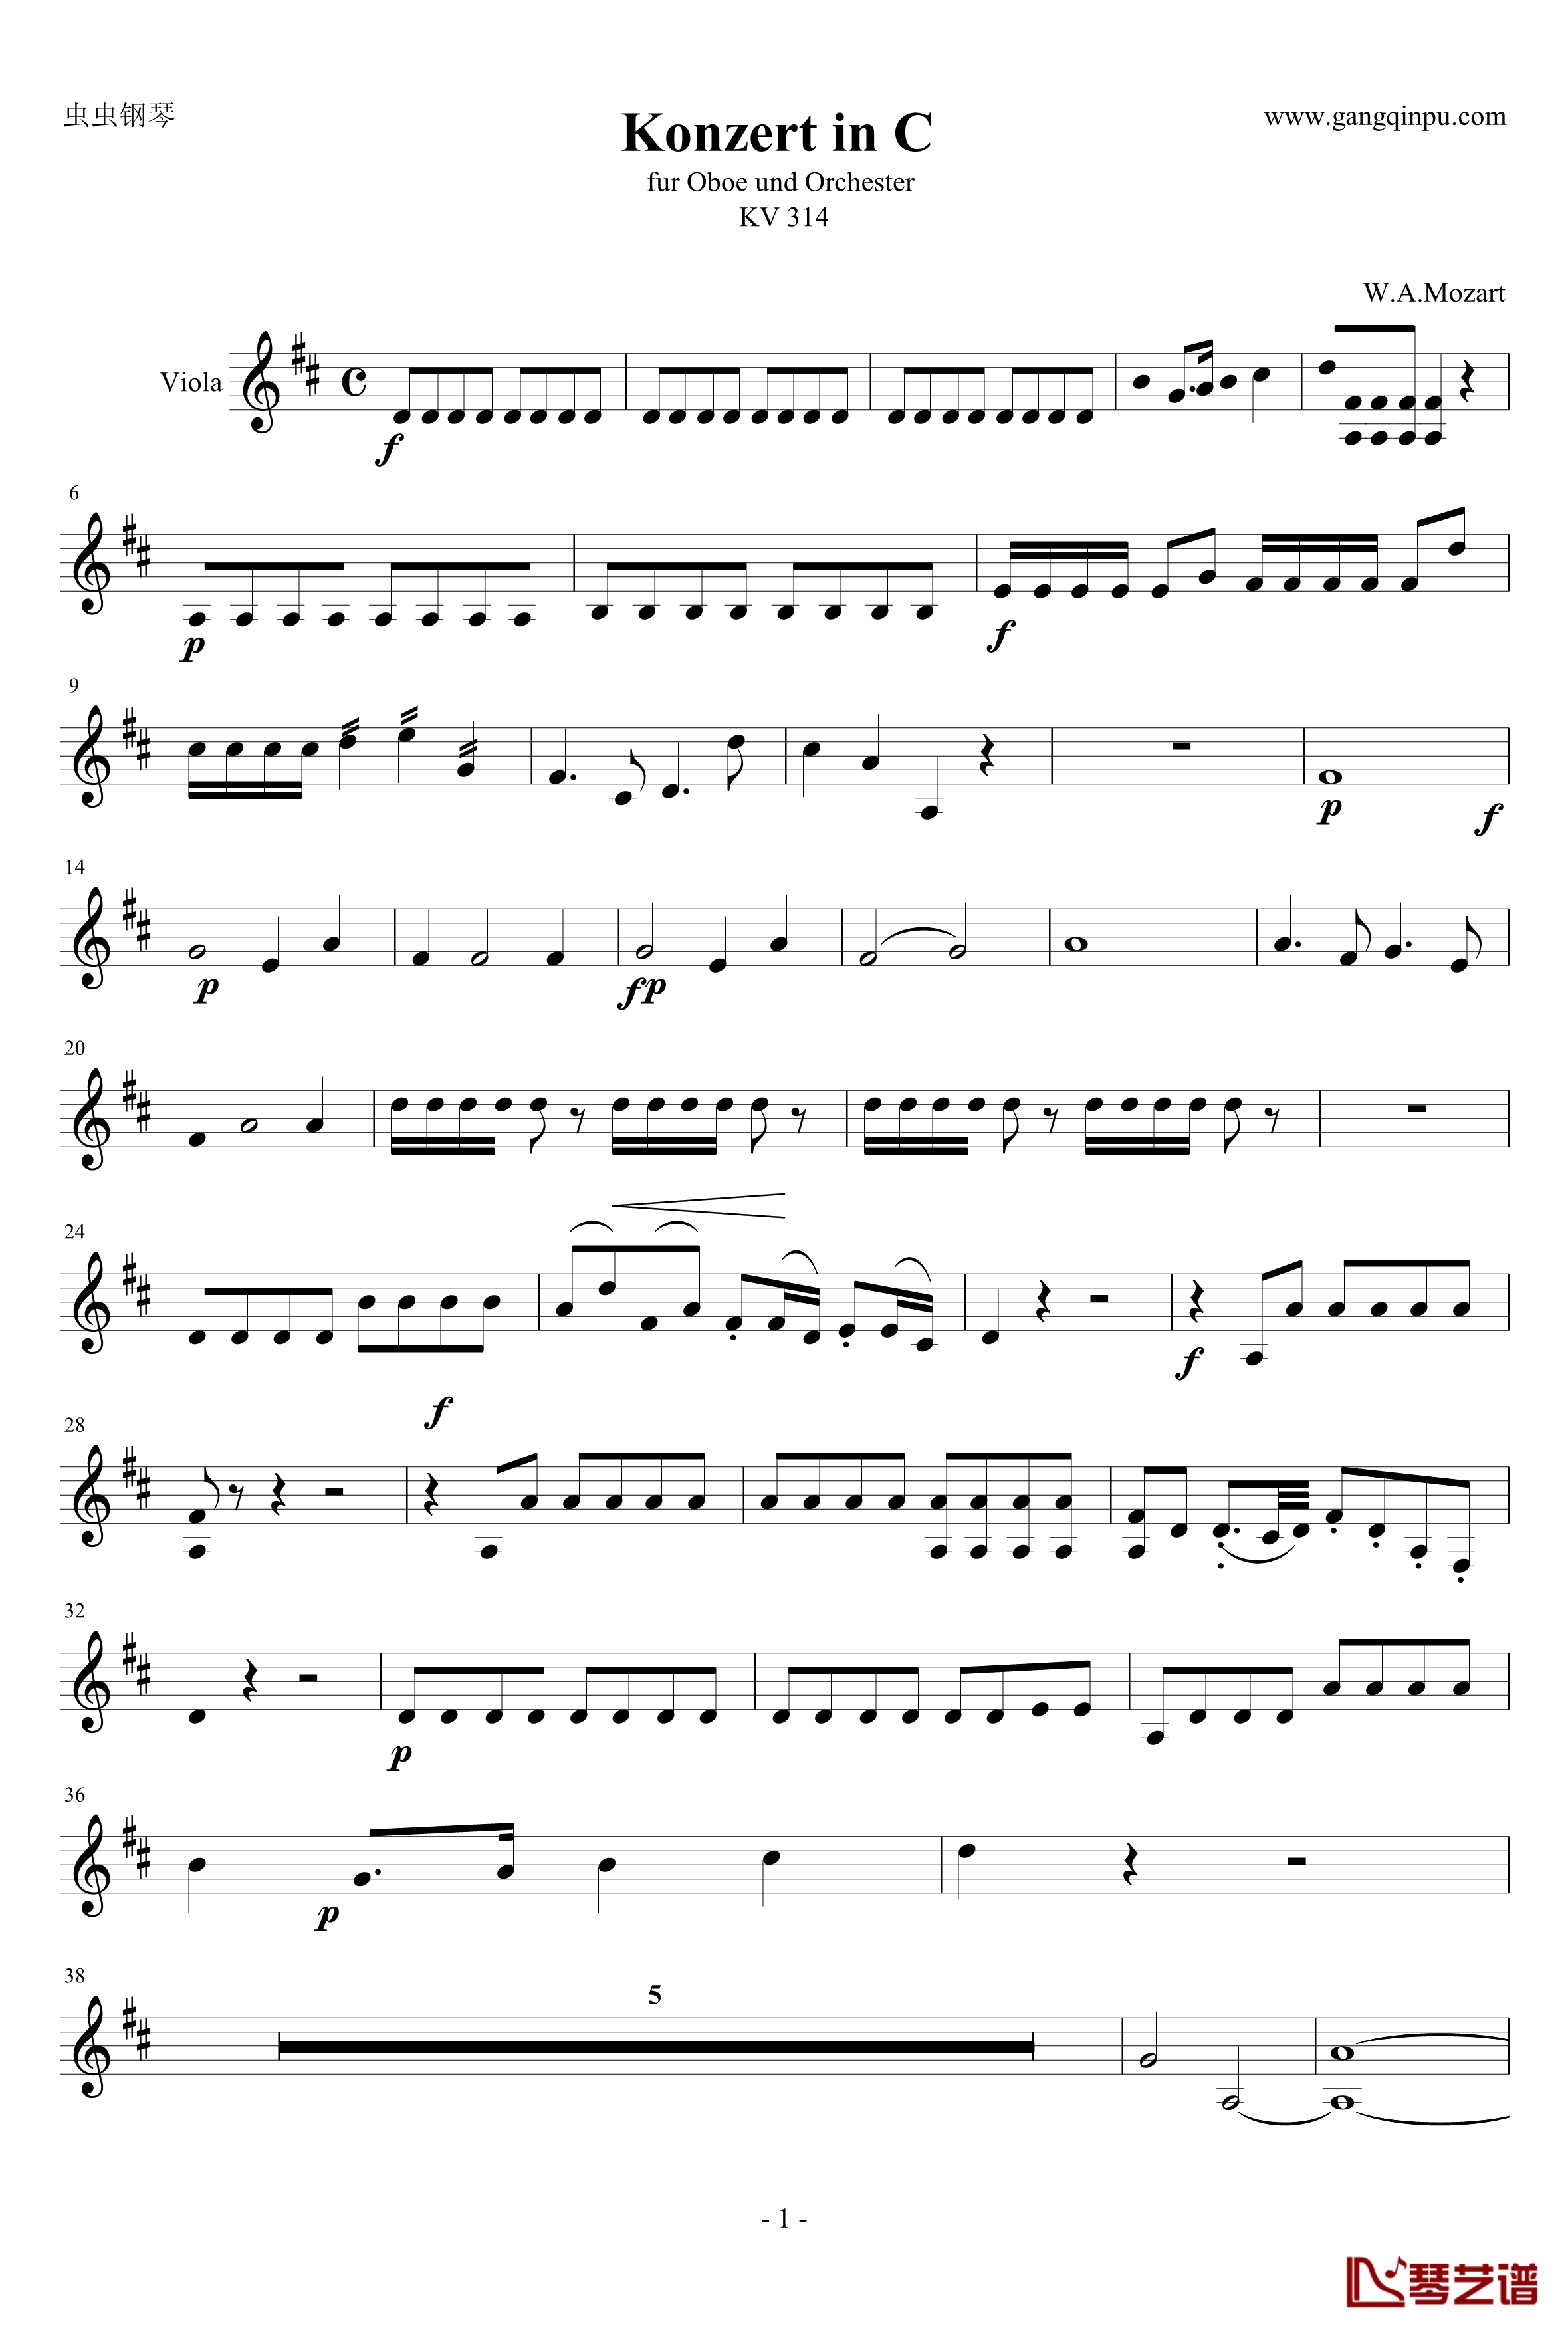 C大调双簧管协奏曲第一乐章钢琴谱-中提分谱 单簧管版-莫扎特1